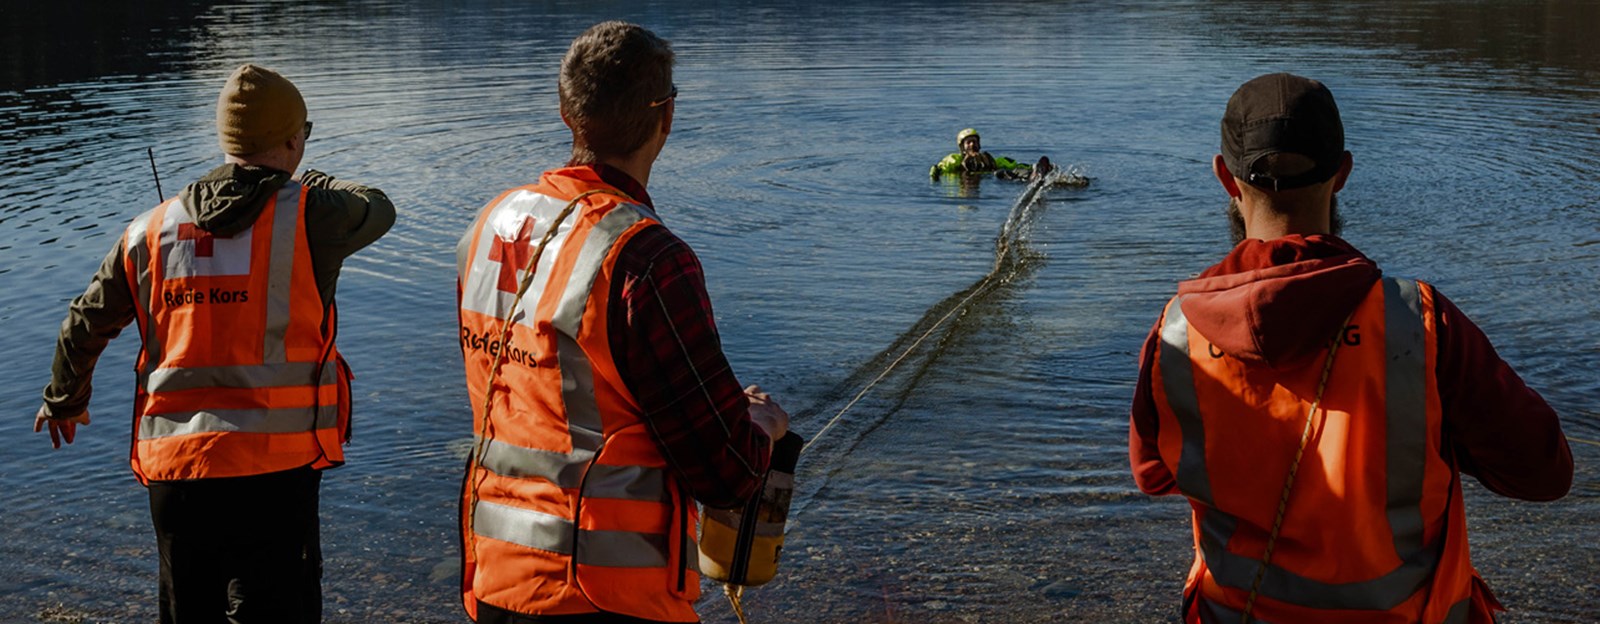 Tre hjelpekorpsere øver på å redde en person i vannet